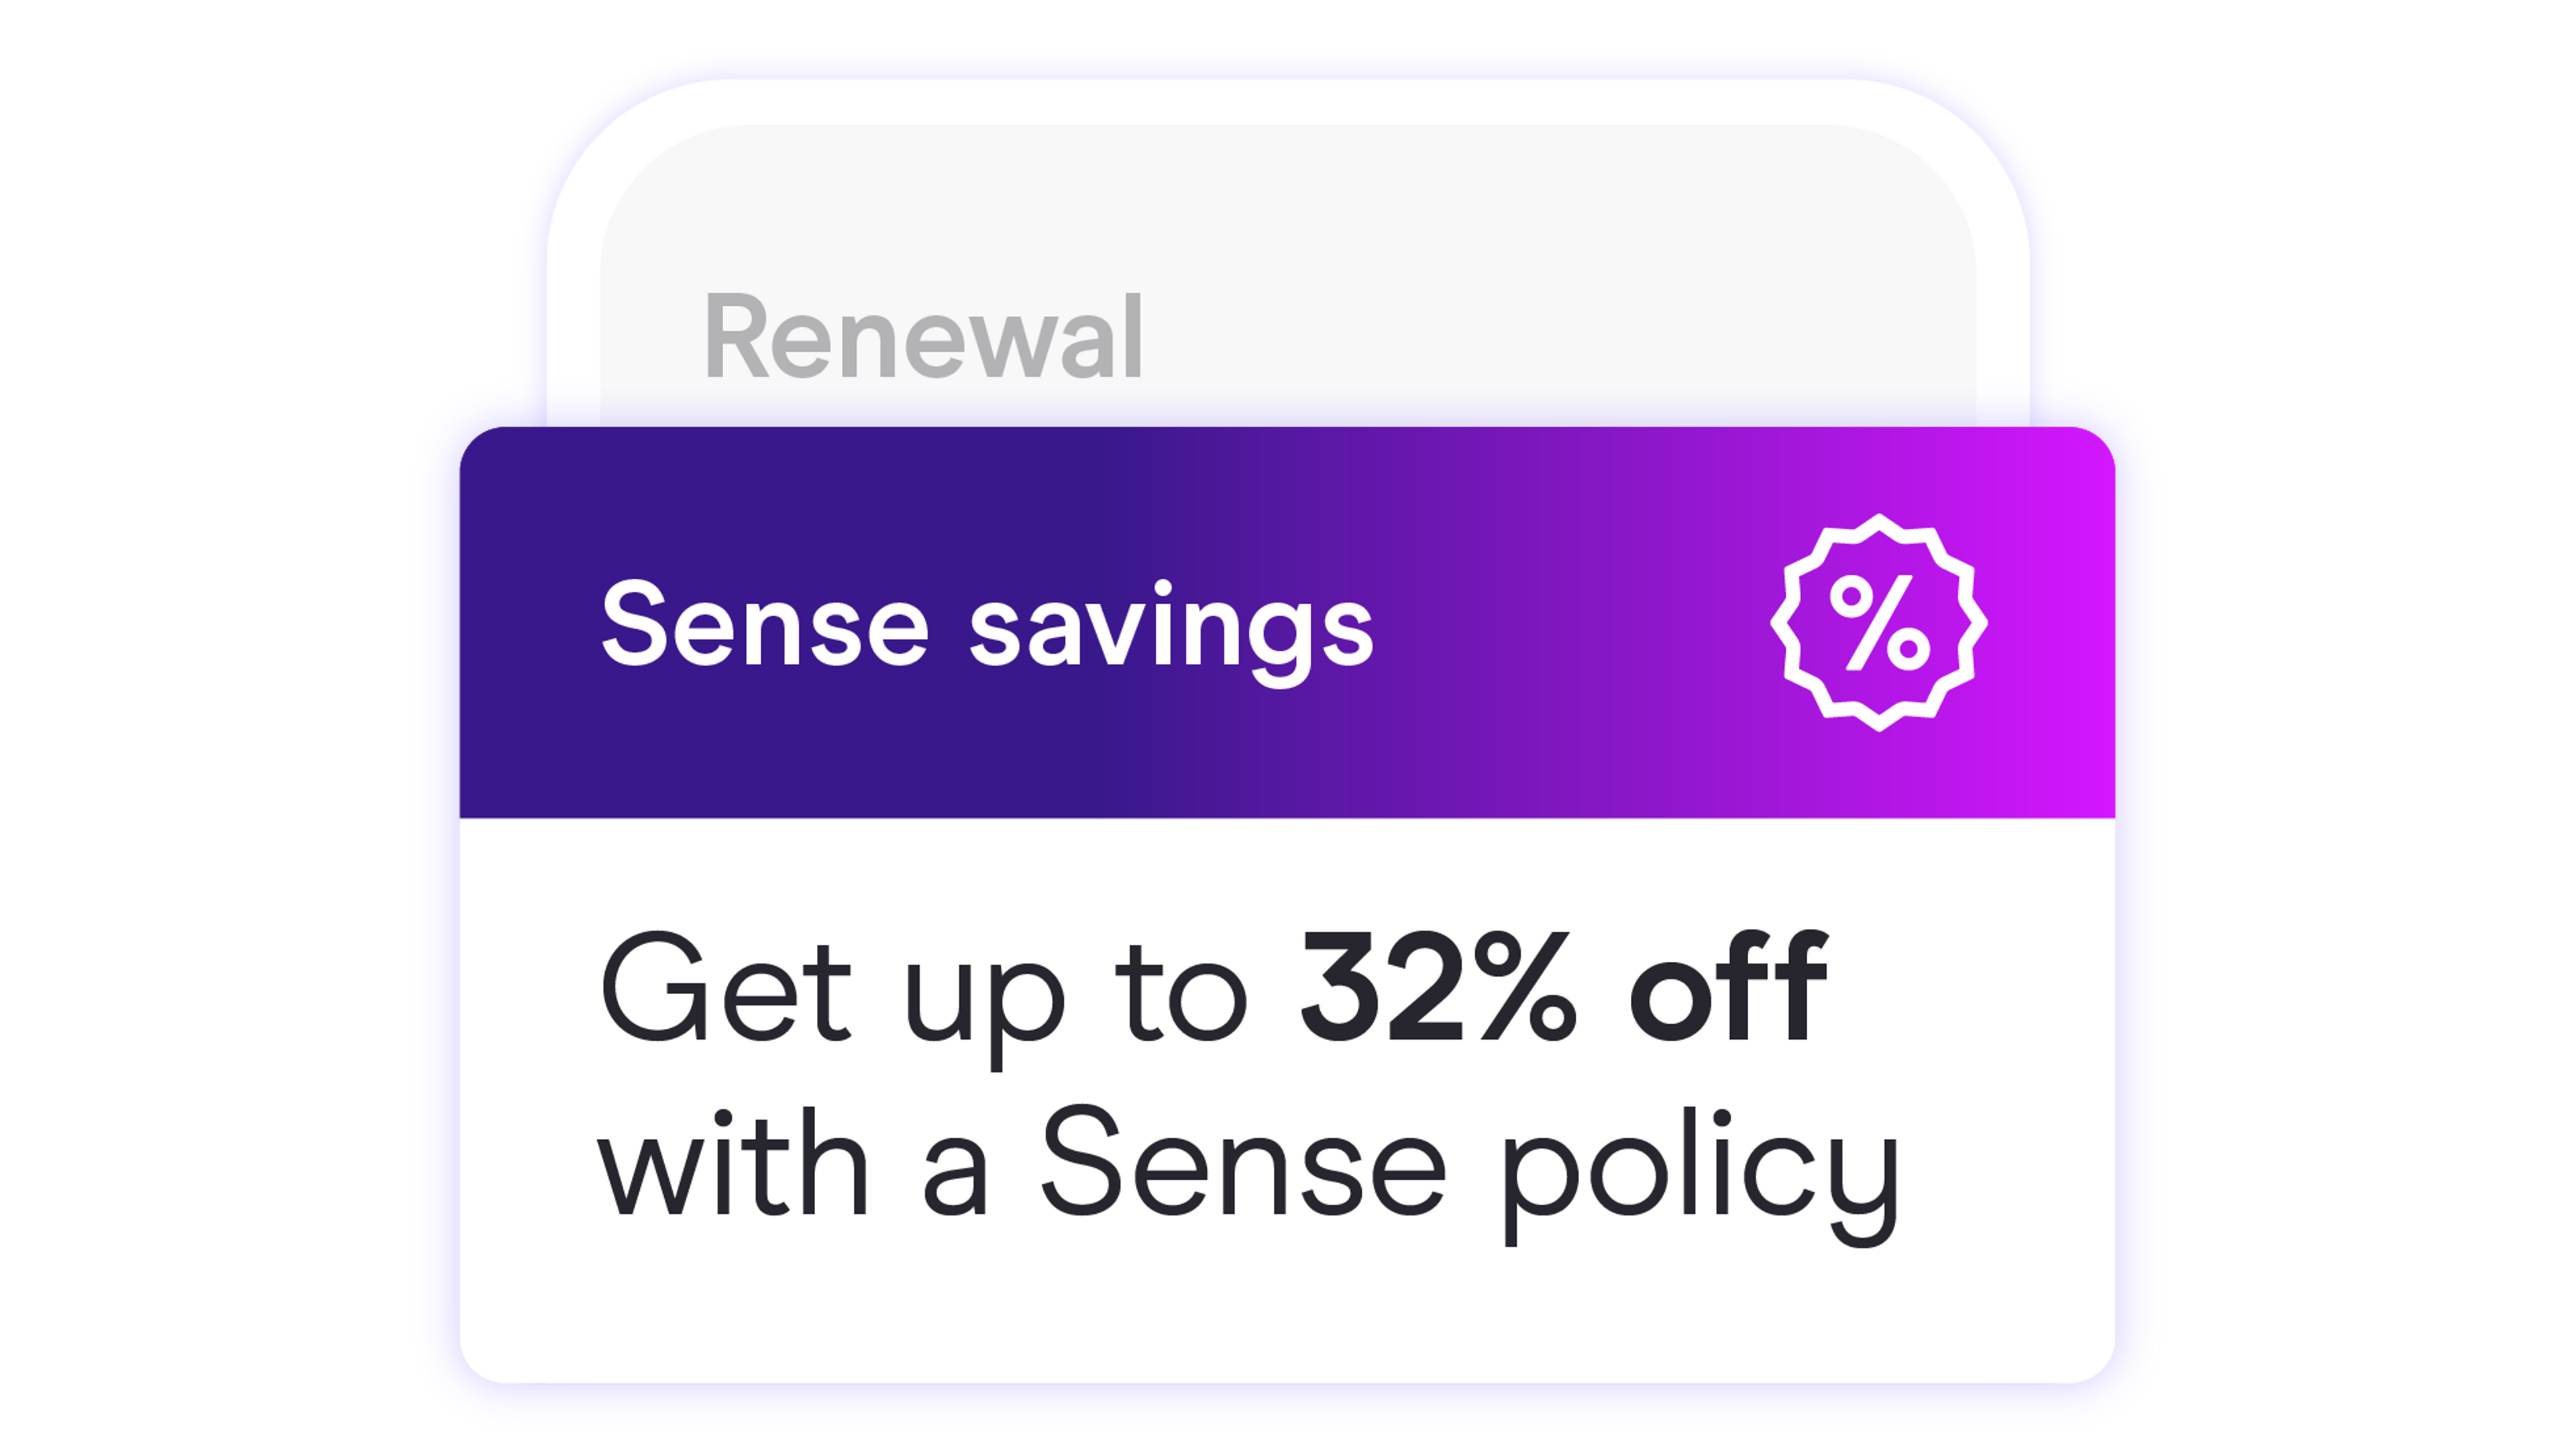 Zego Sense app showing 32% sense savings at renewal